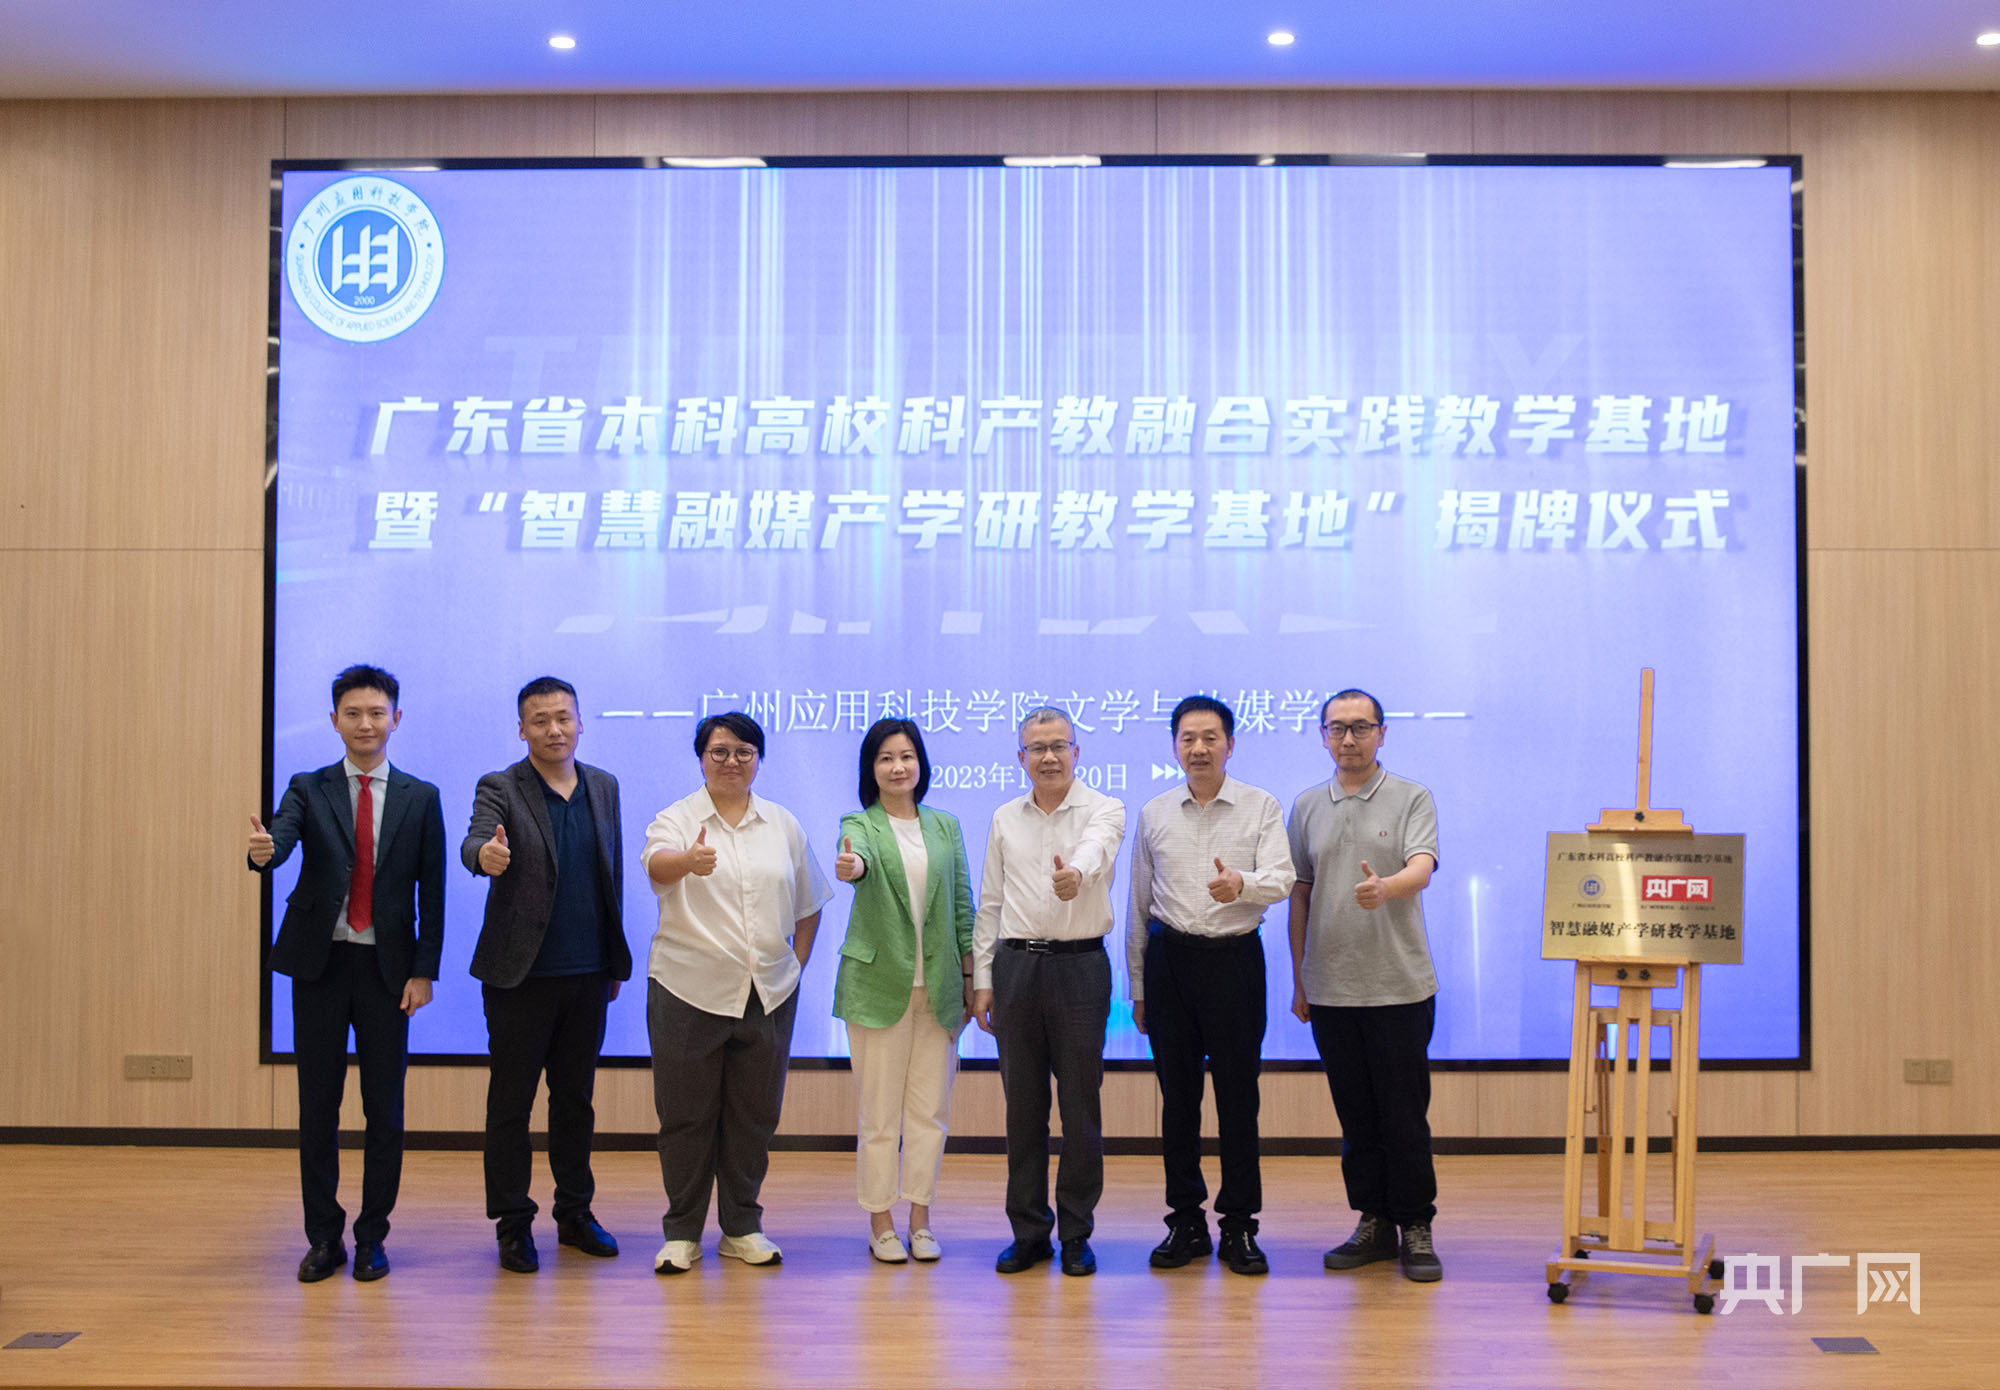 广州应用科技学院智慧融媒产学研教学基地揭牌